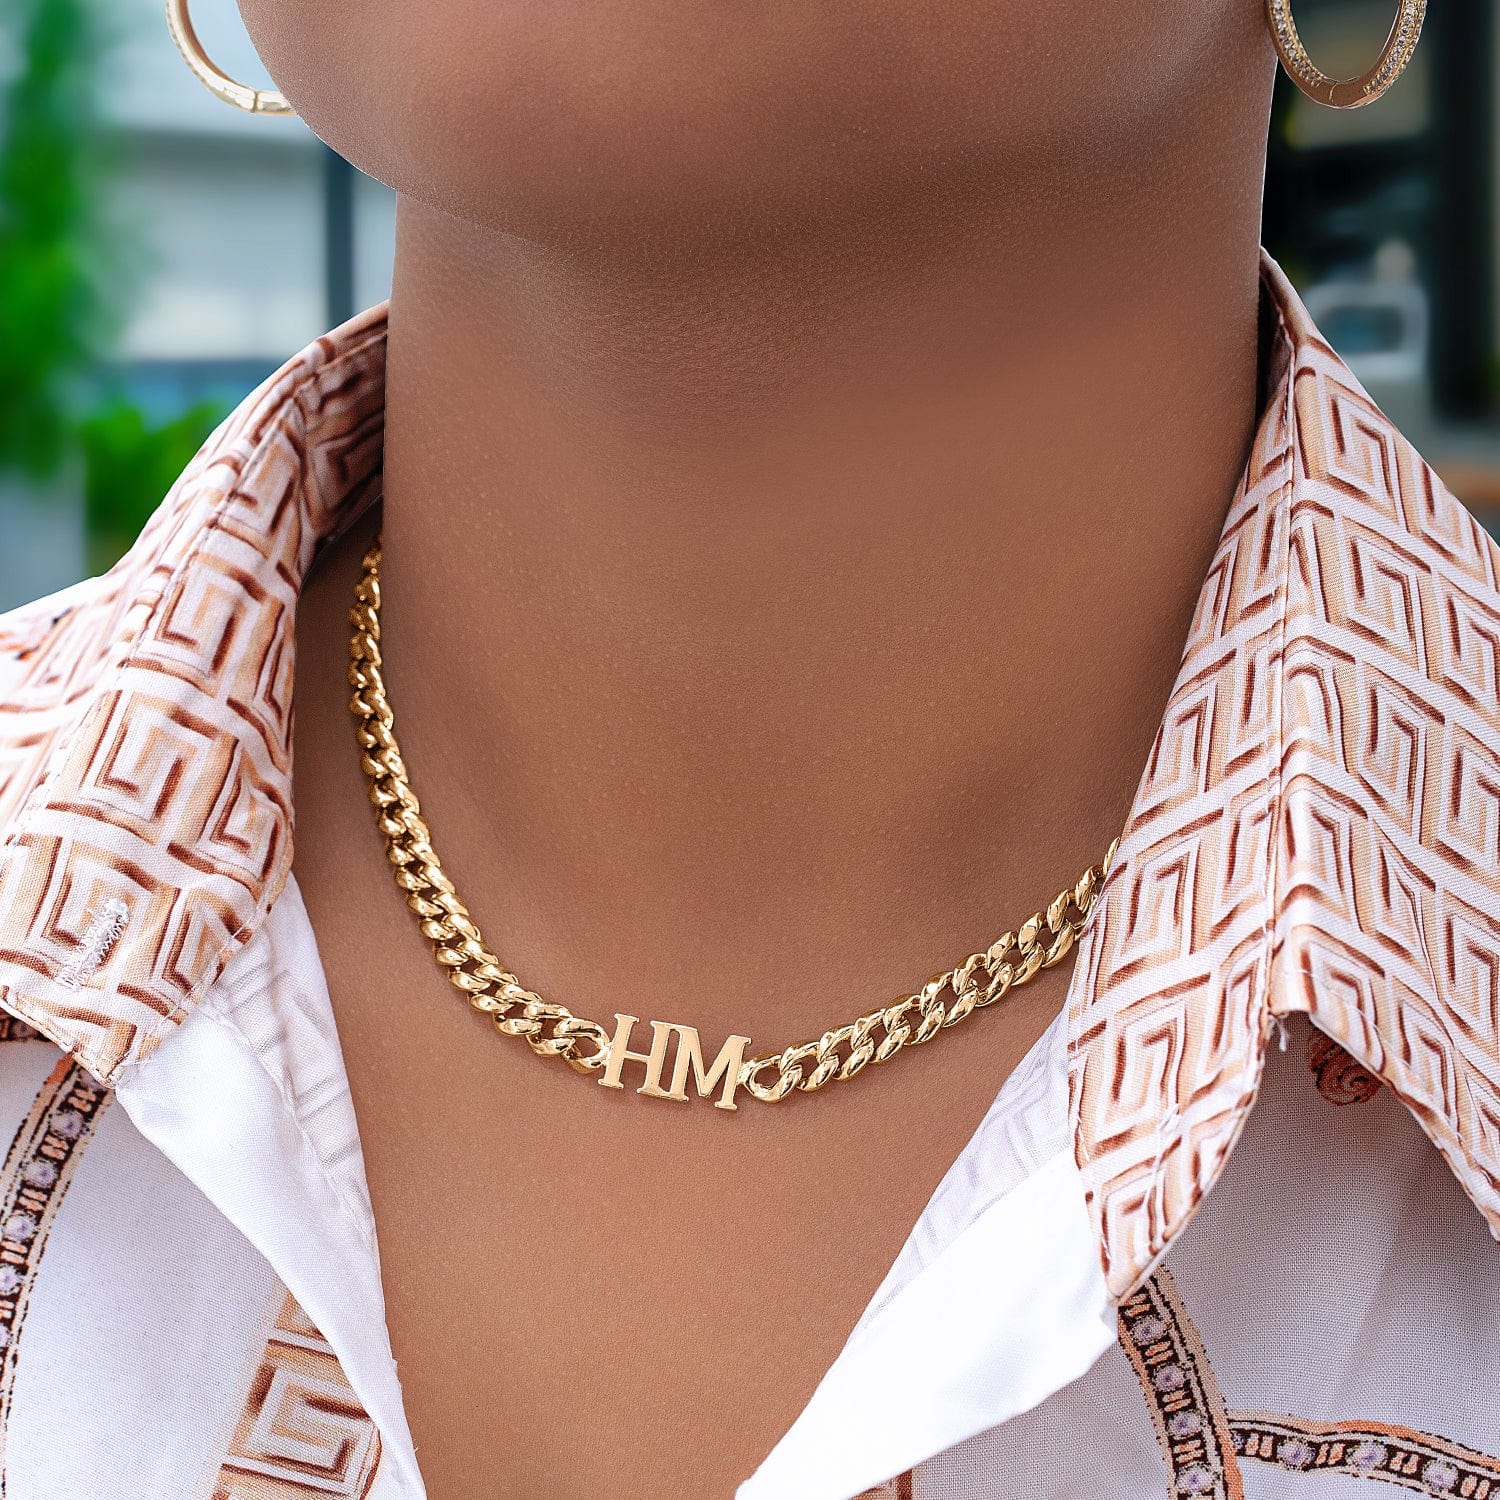 monogram charm necklace